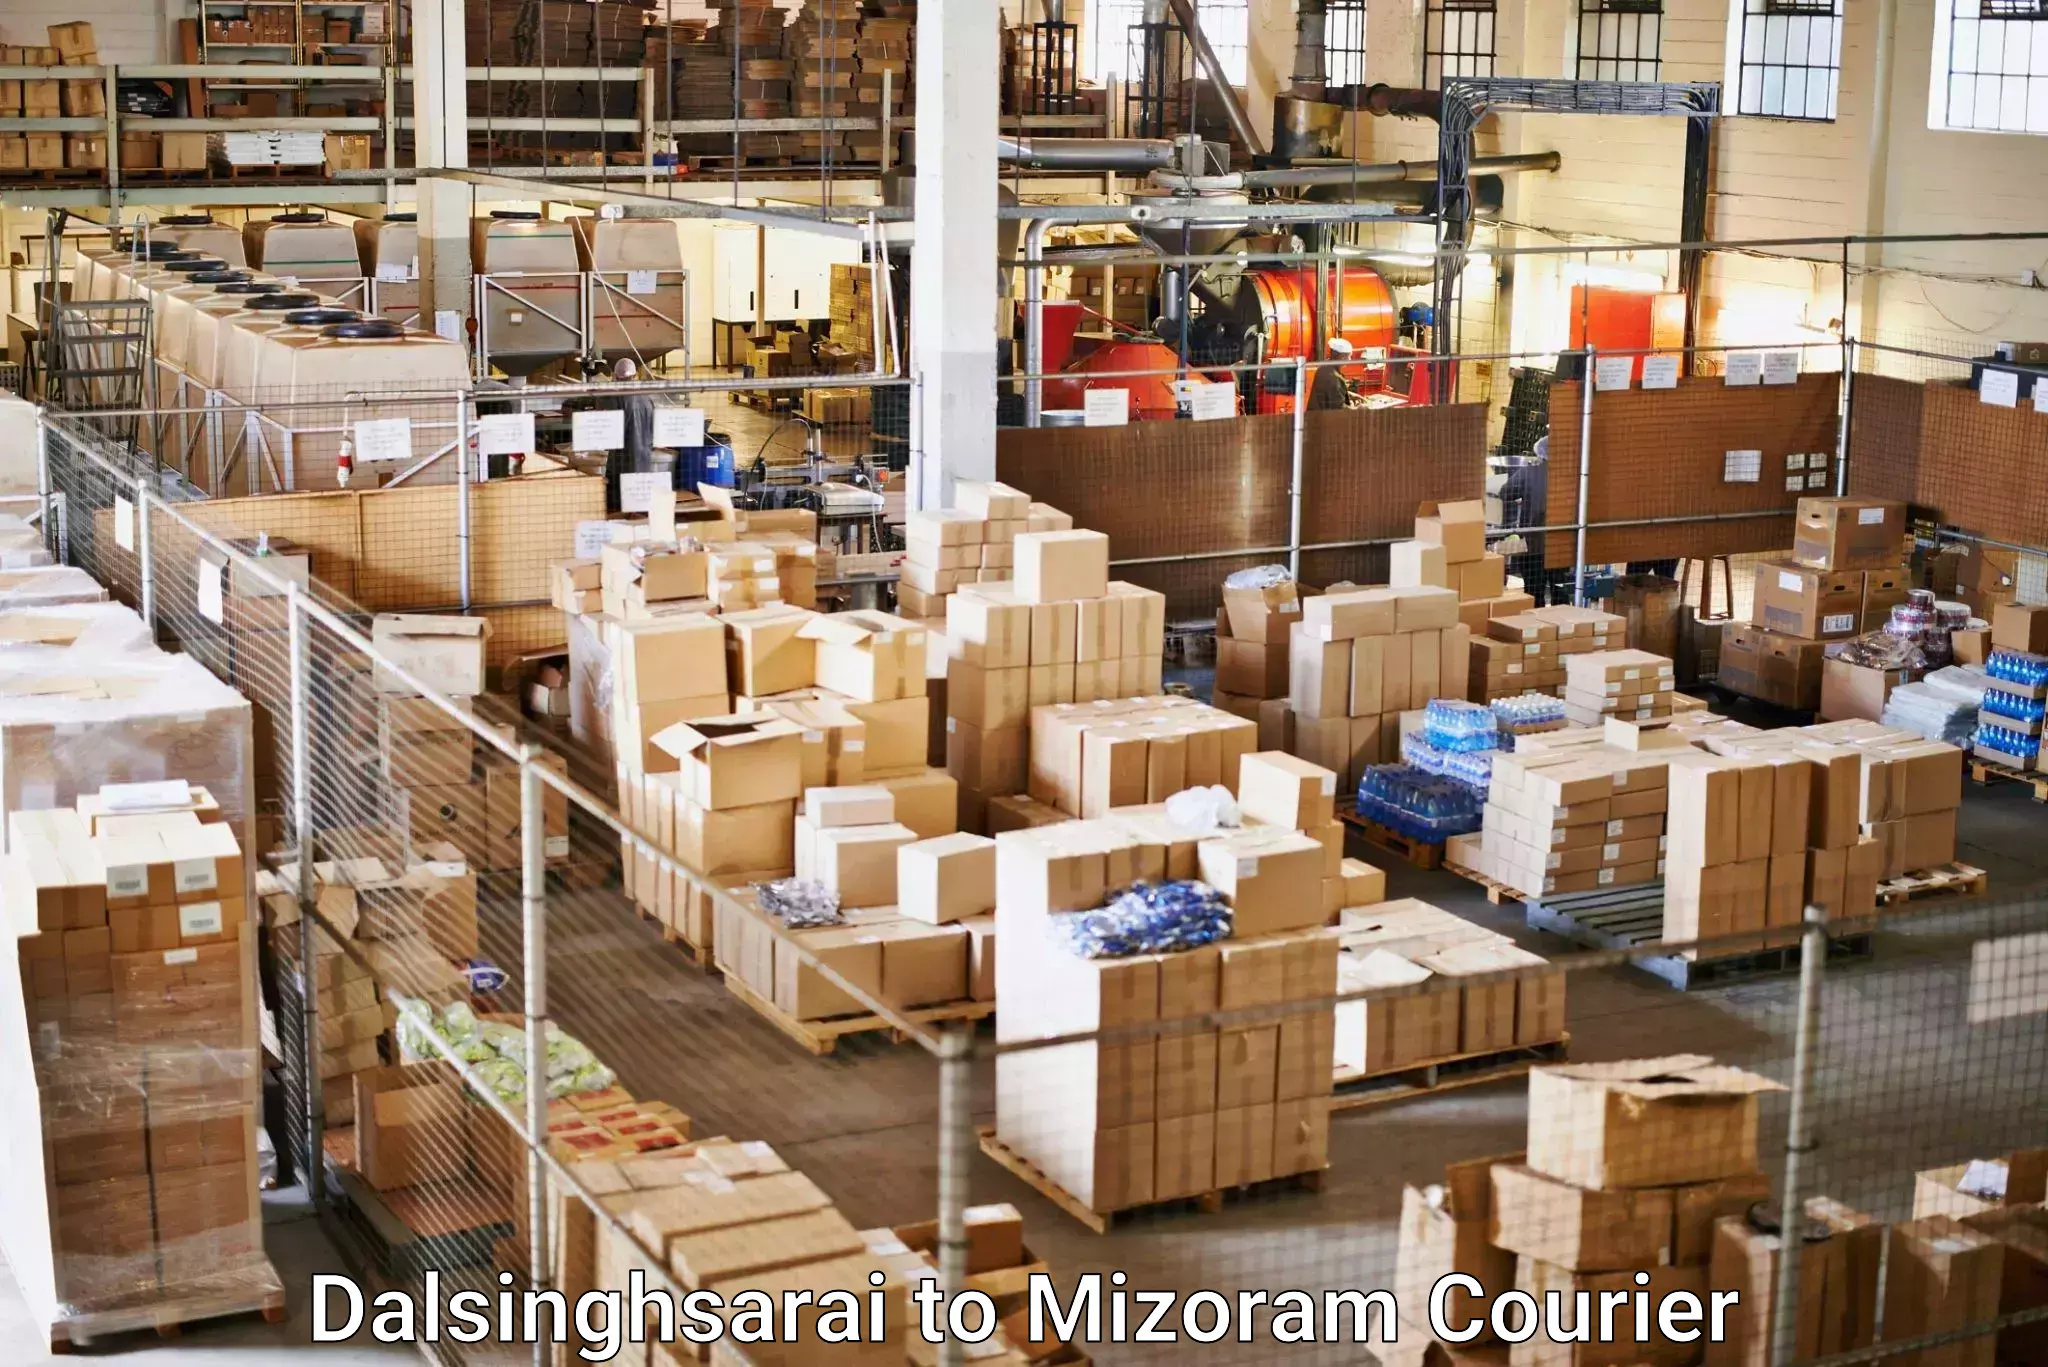 Cargo delivery service Dalsinghsarai to Aizawl